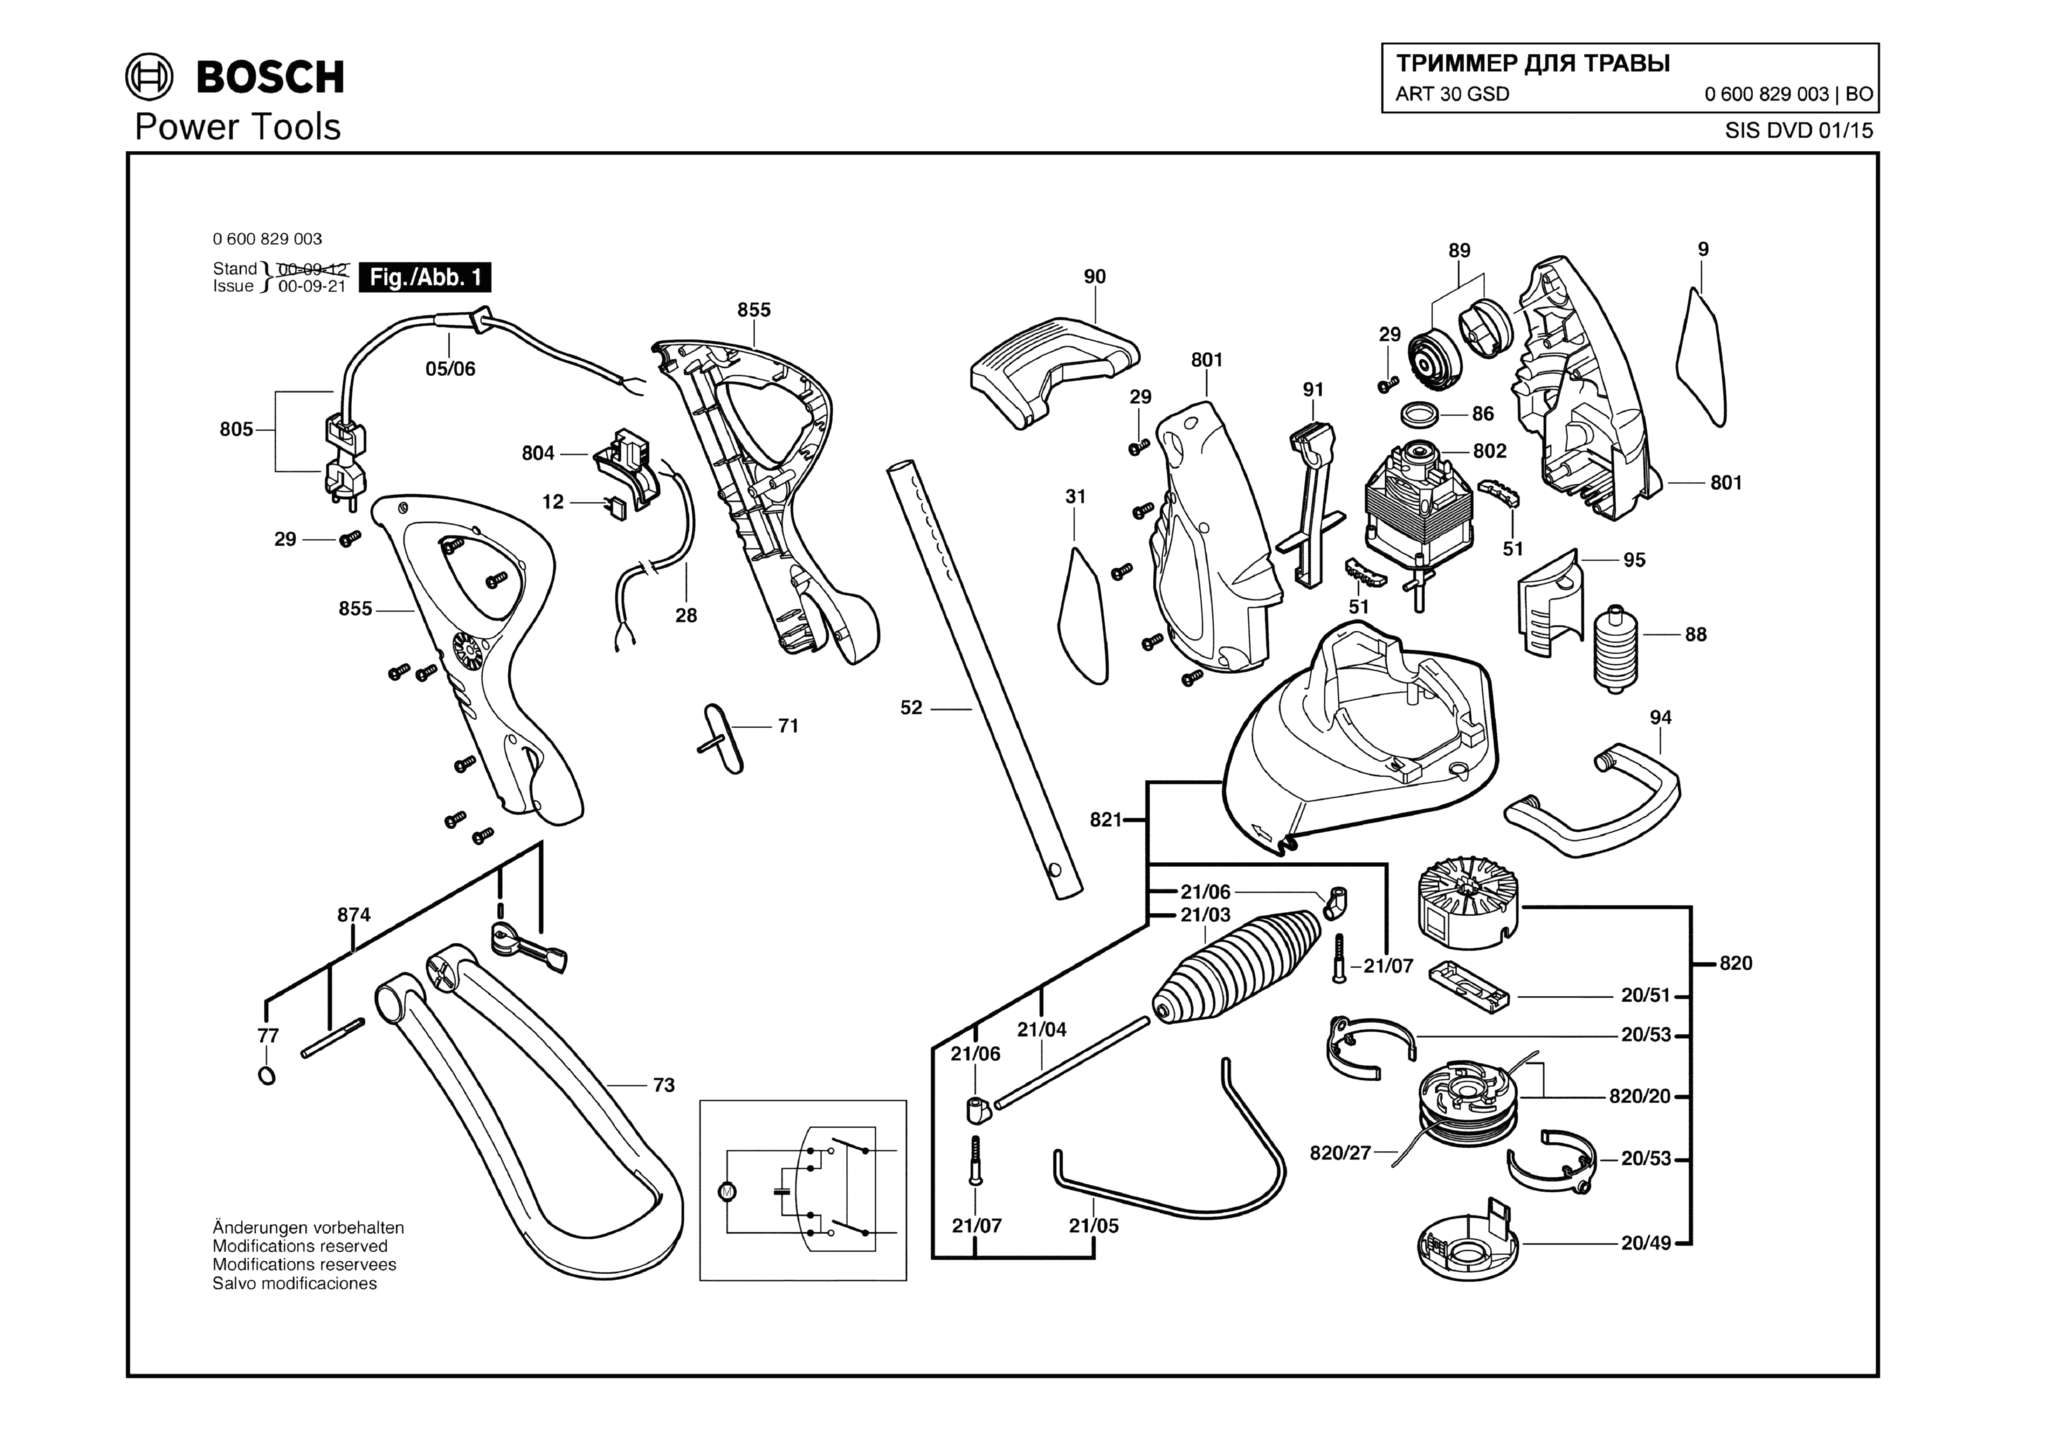 Запчасти, схема и деталировка Bosch ART 30 GSD (ТИП 0600829003)